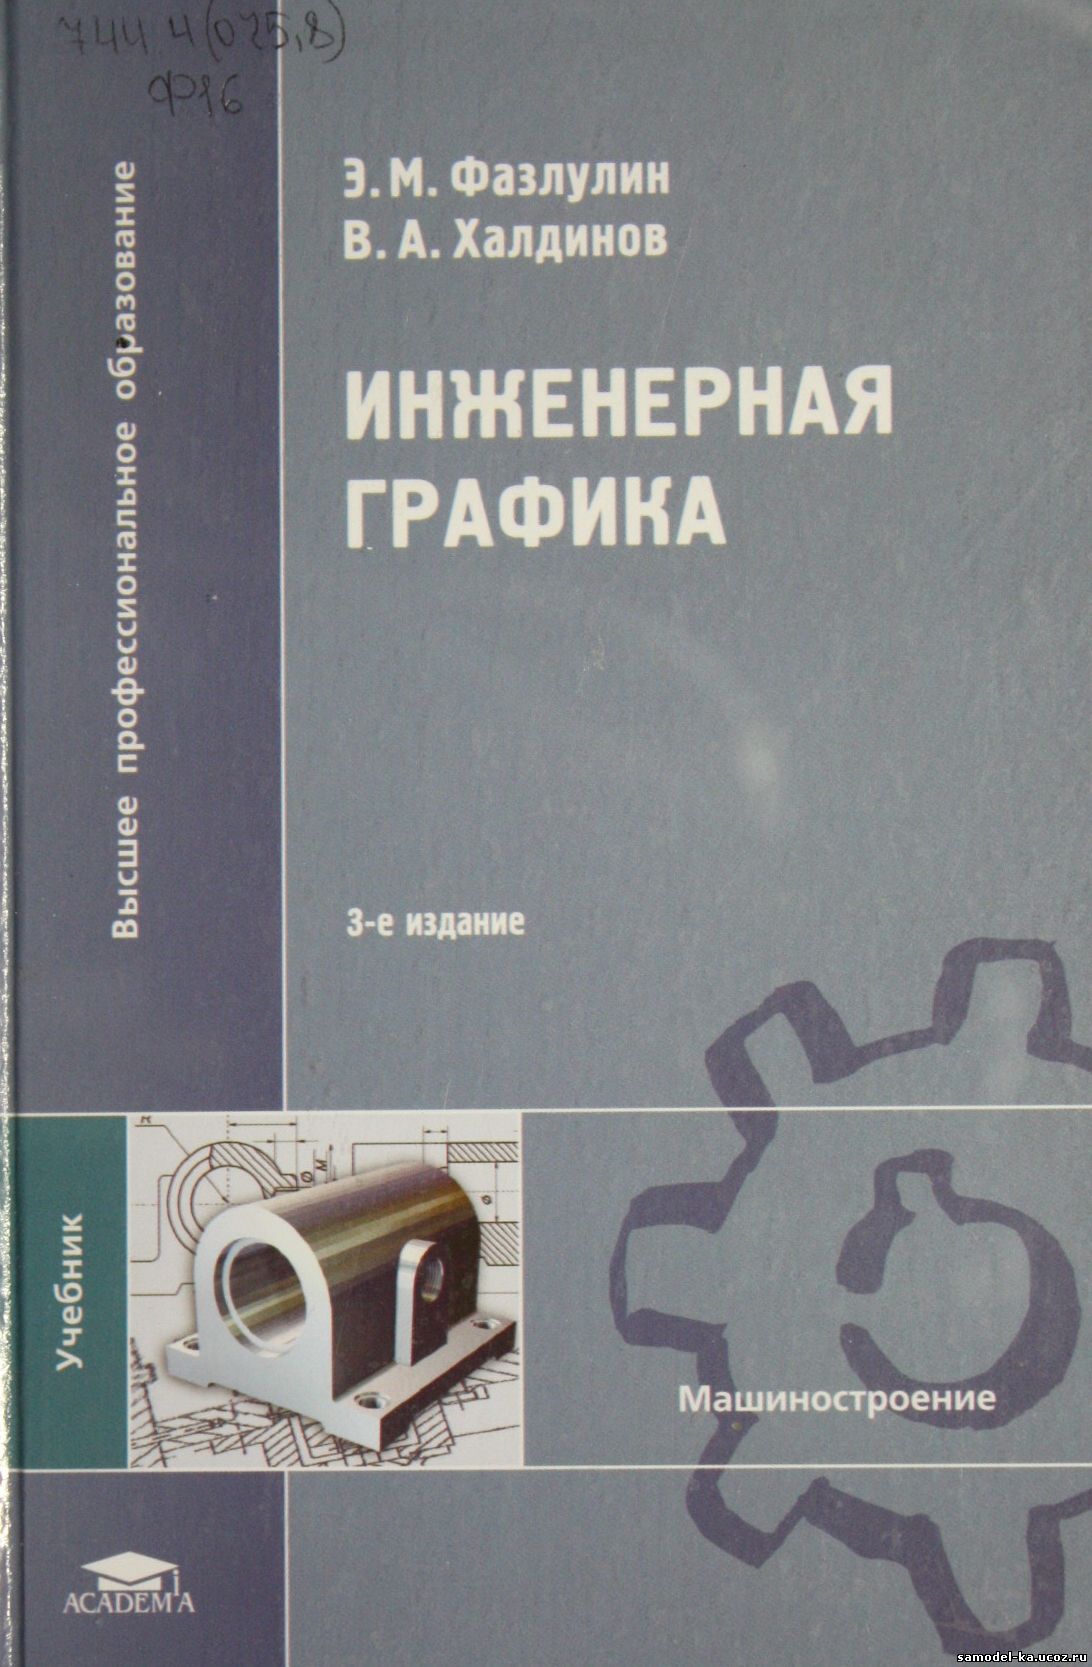 Инженерная графика (2009) Э.М. Фазлулин